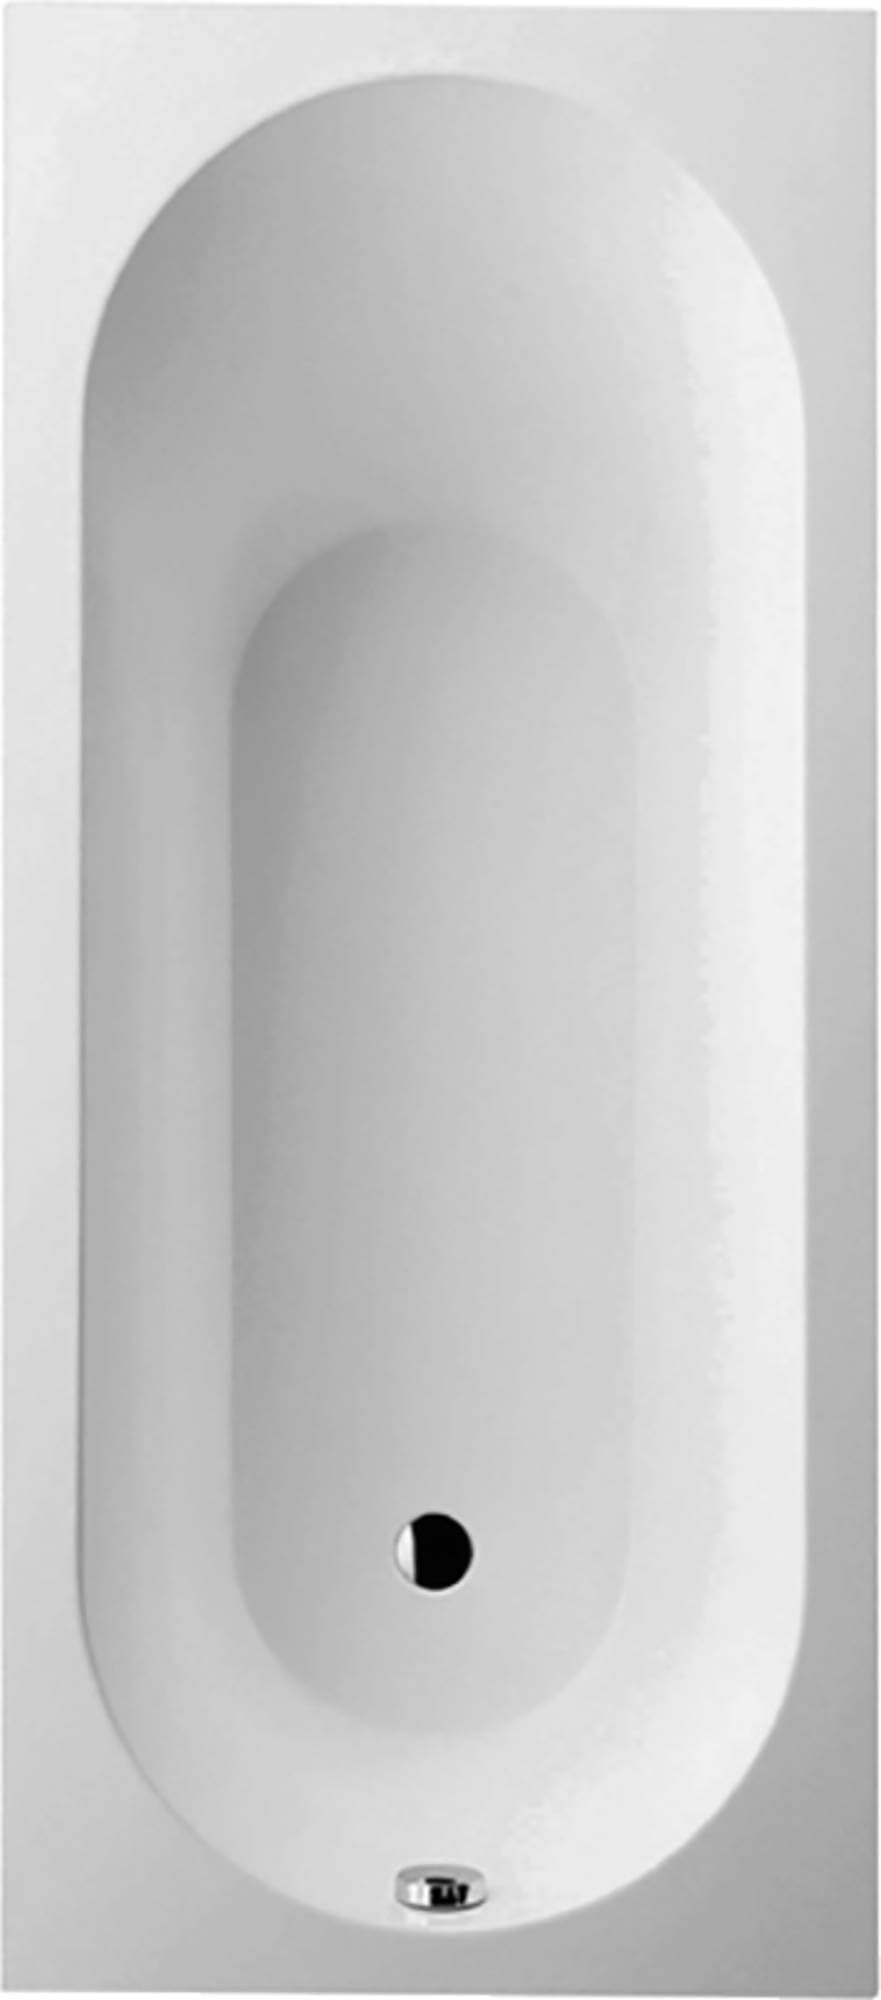 Villeroy & Boch Oberon Badewanne 180x80 cm. inkl. Fußgestell Weiß